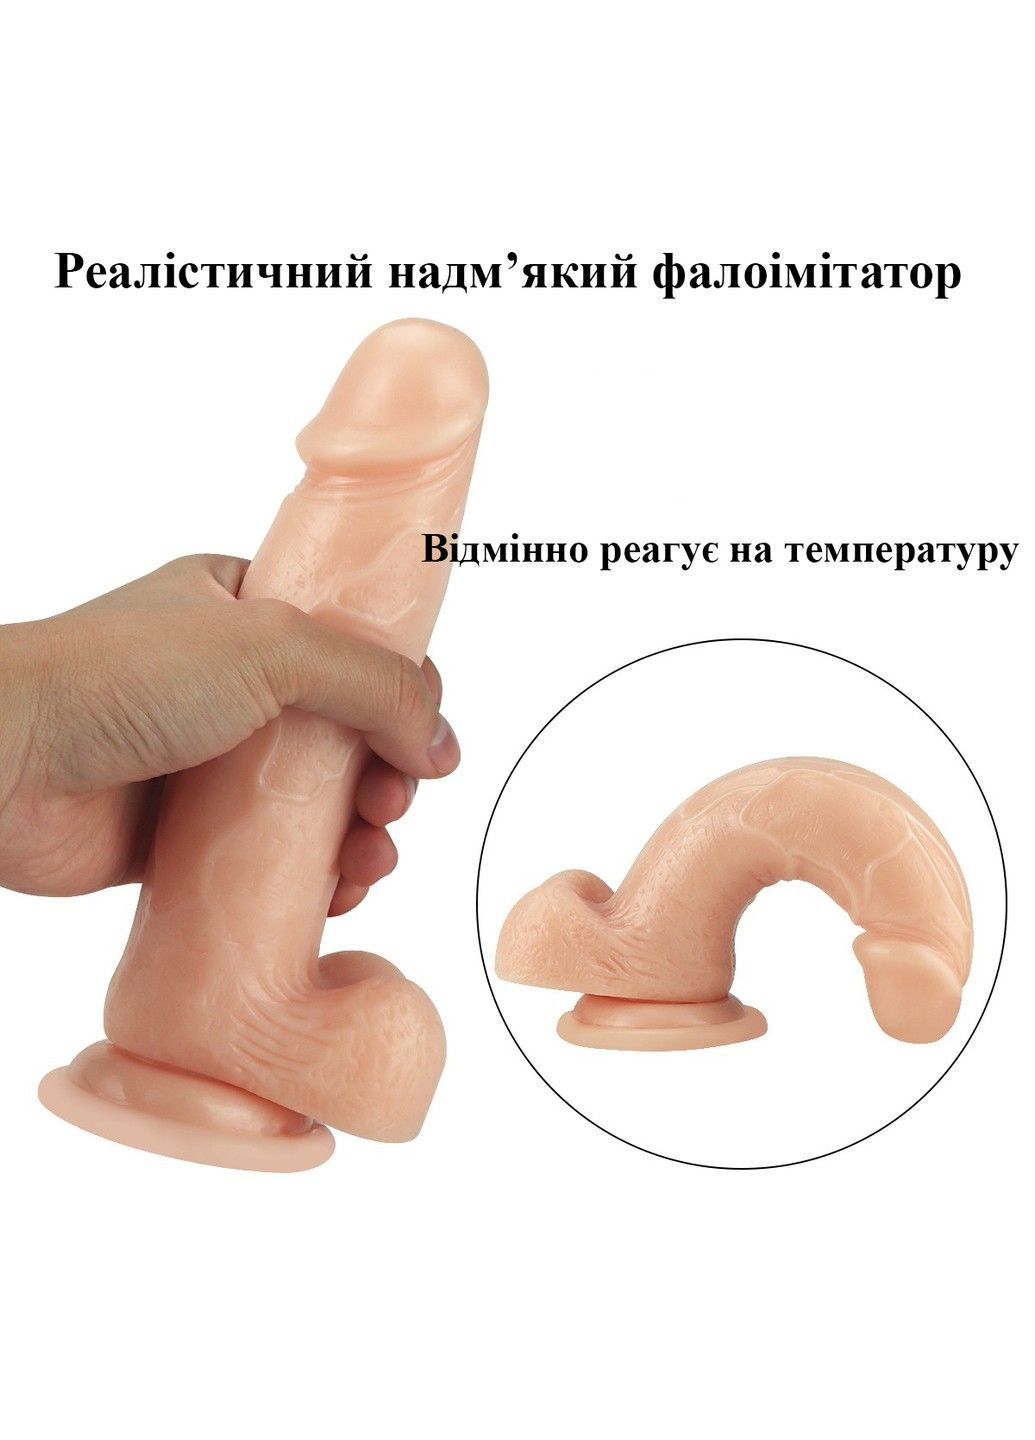 Реалистичный пенис телесного цвета размер L (200*45 мм) с мошонкой We Love (284279481)